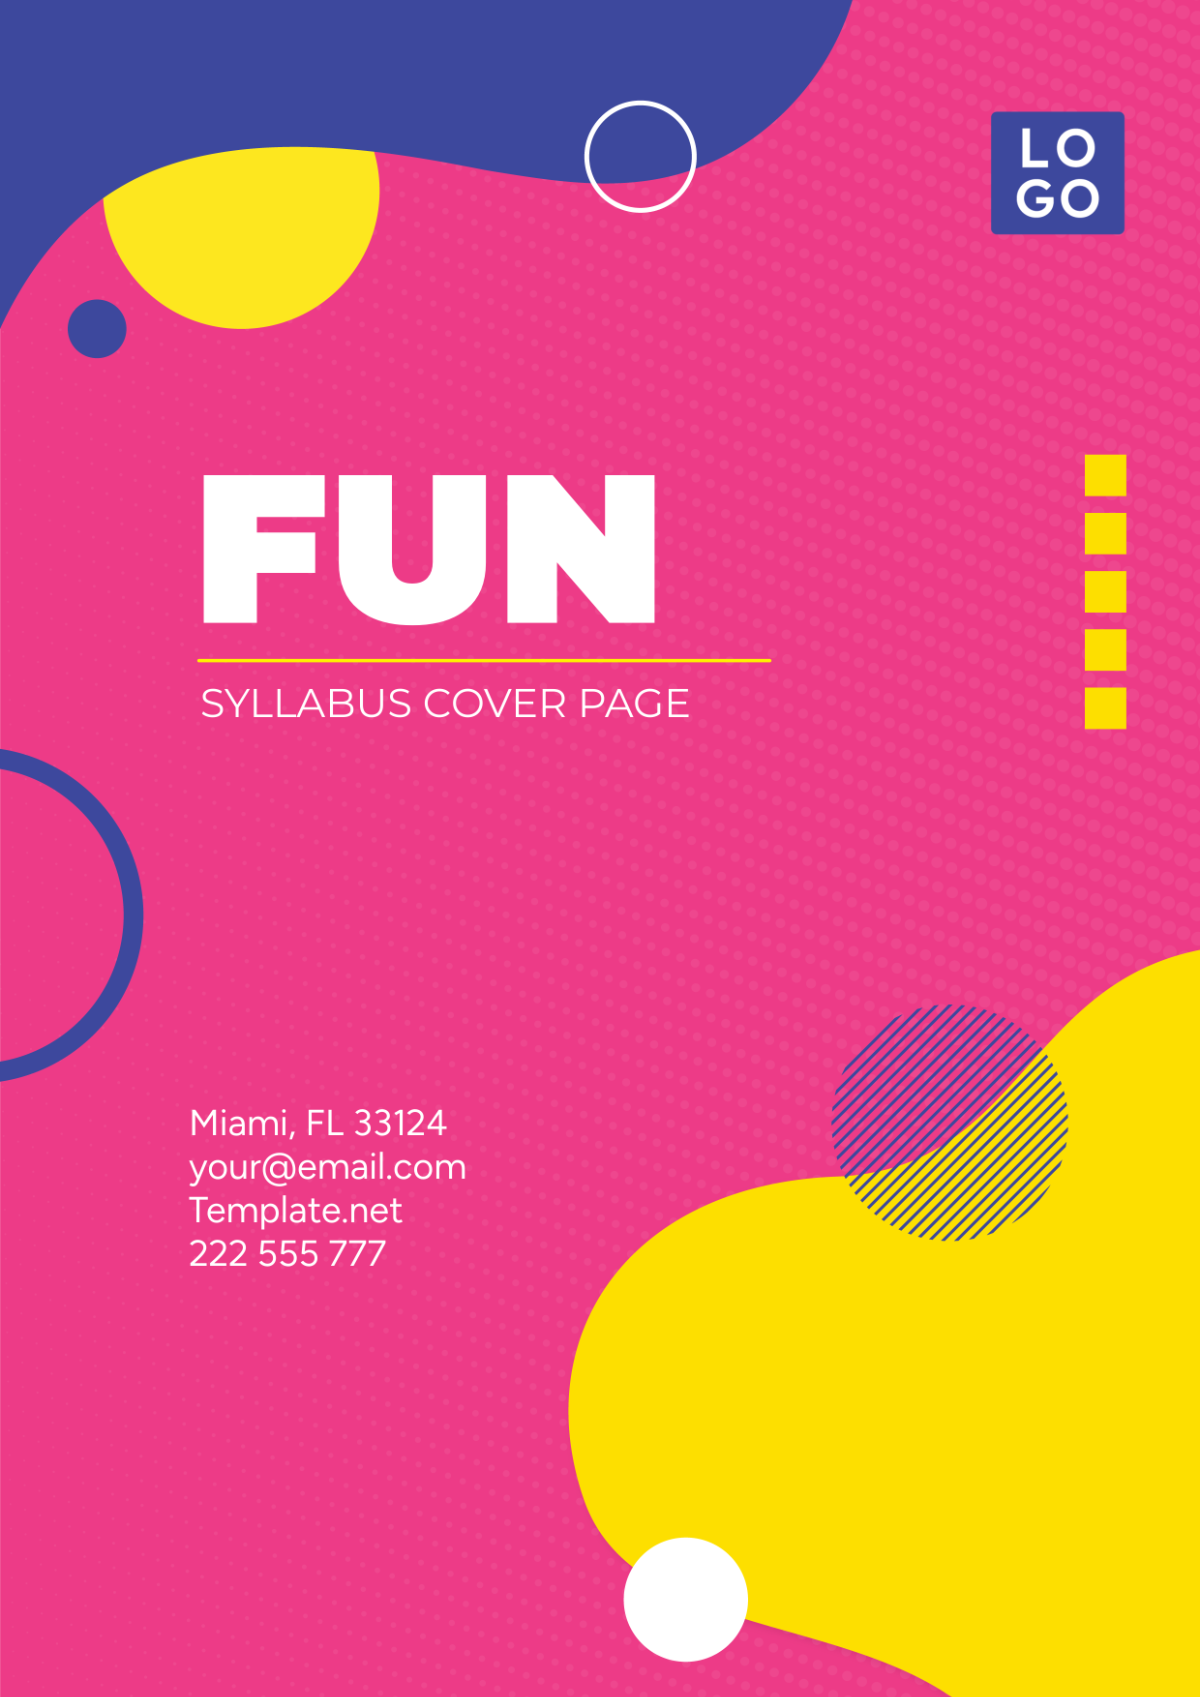 Fun Syllabus Cover Page